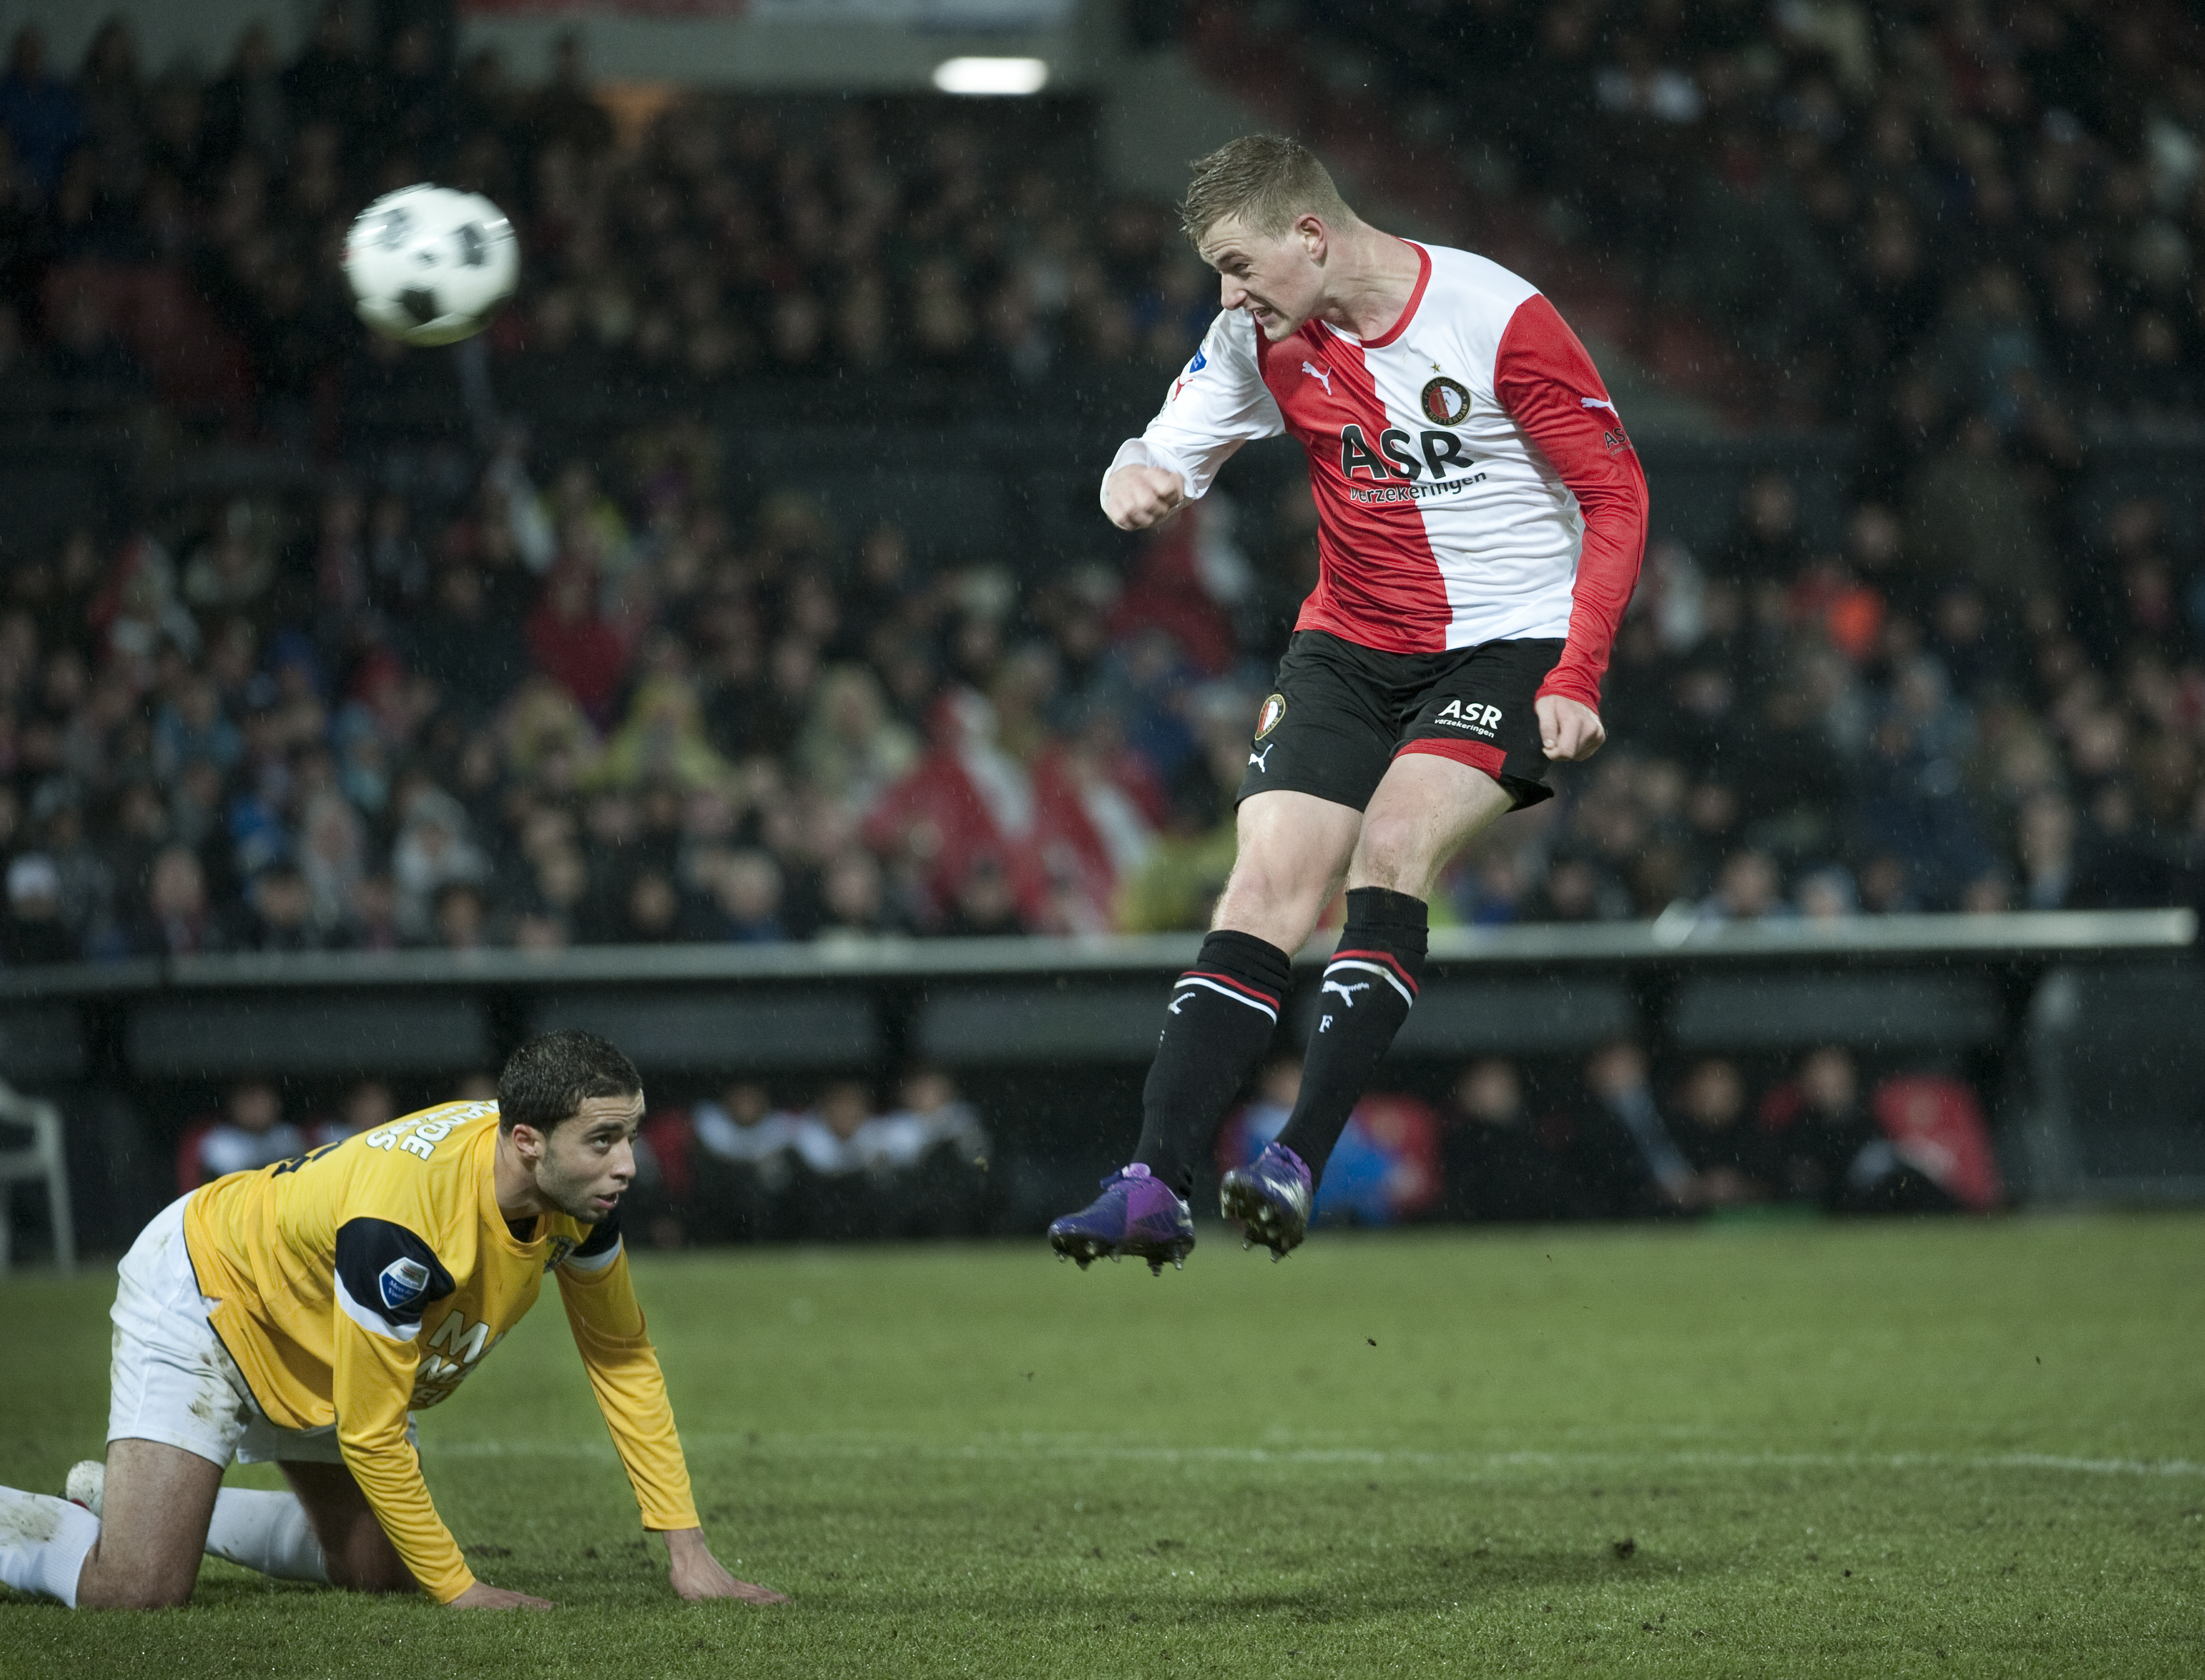 Anfallaren har tagit Holland med storm med 20 ligamål på 23 matcher.